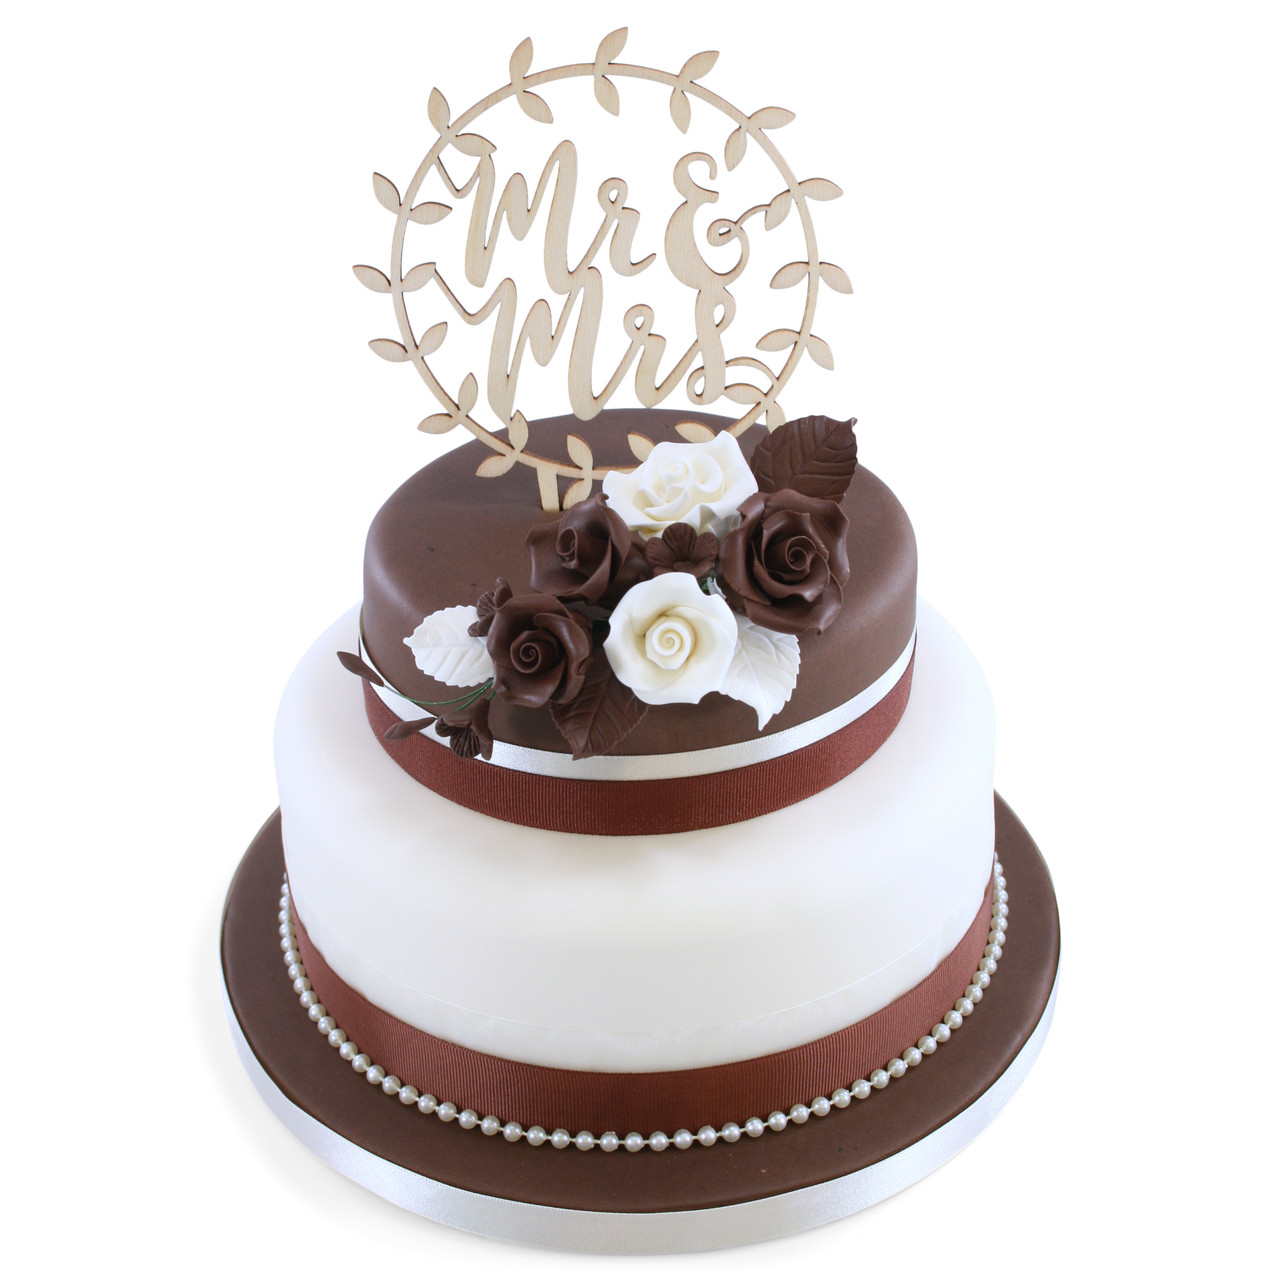 Chocolate Roses Wedding Cake | Wedding Cake |The Cake Store